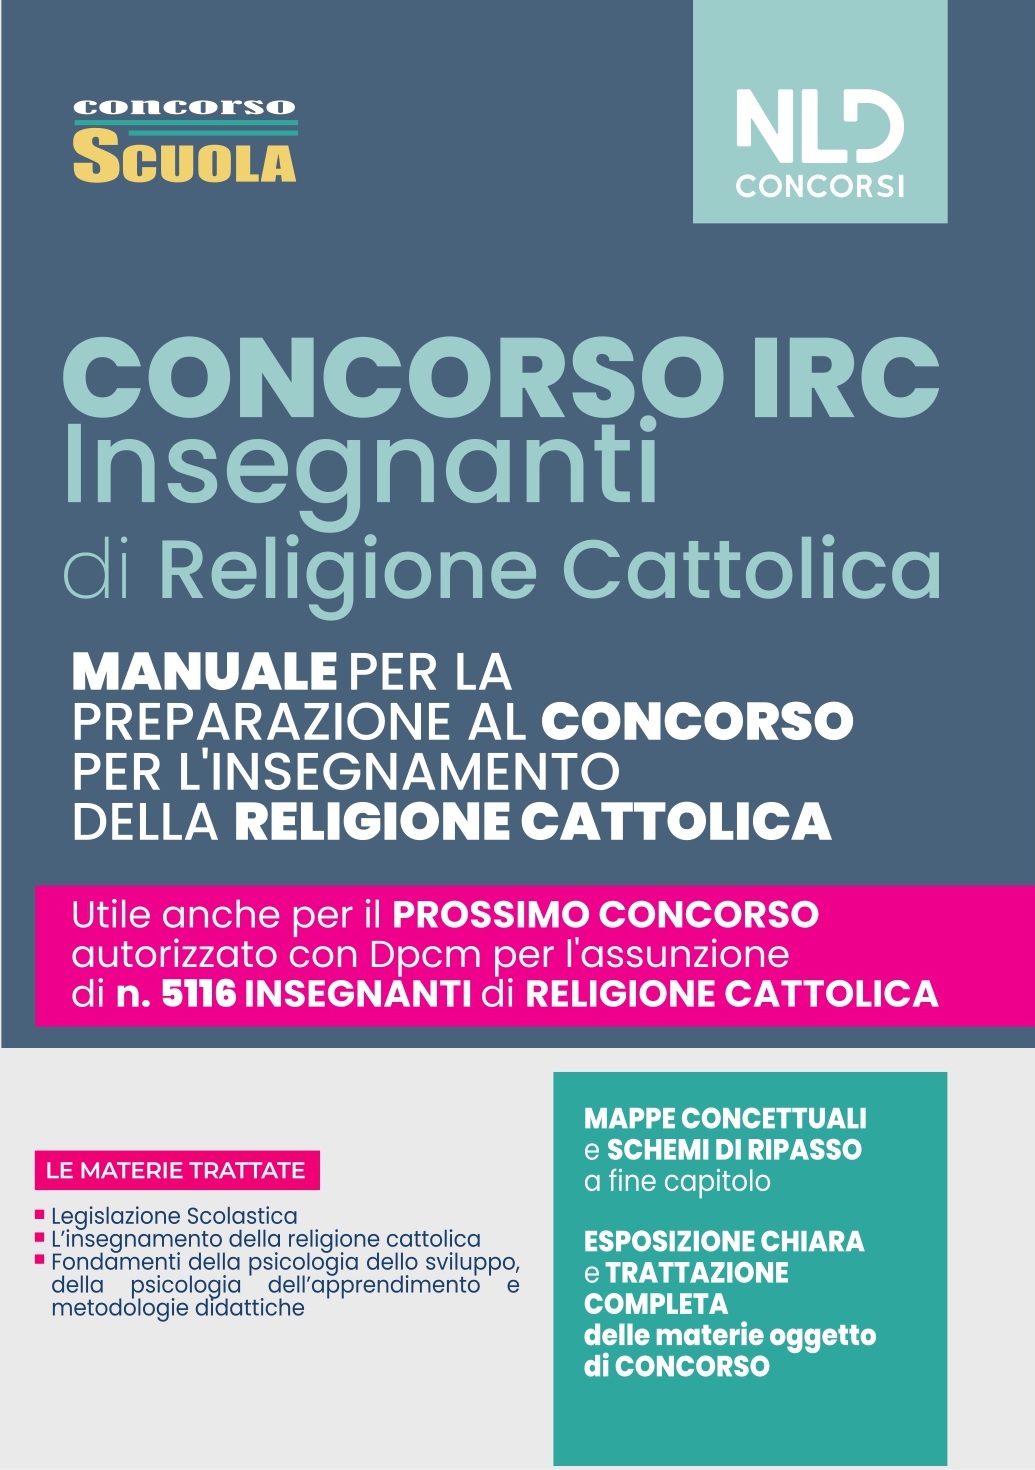 CONCORSO IRC - Insegnanti Religione Cattolica. Manuale per il Concorso 2022